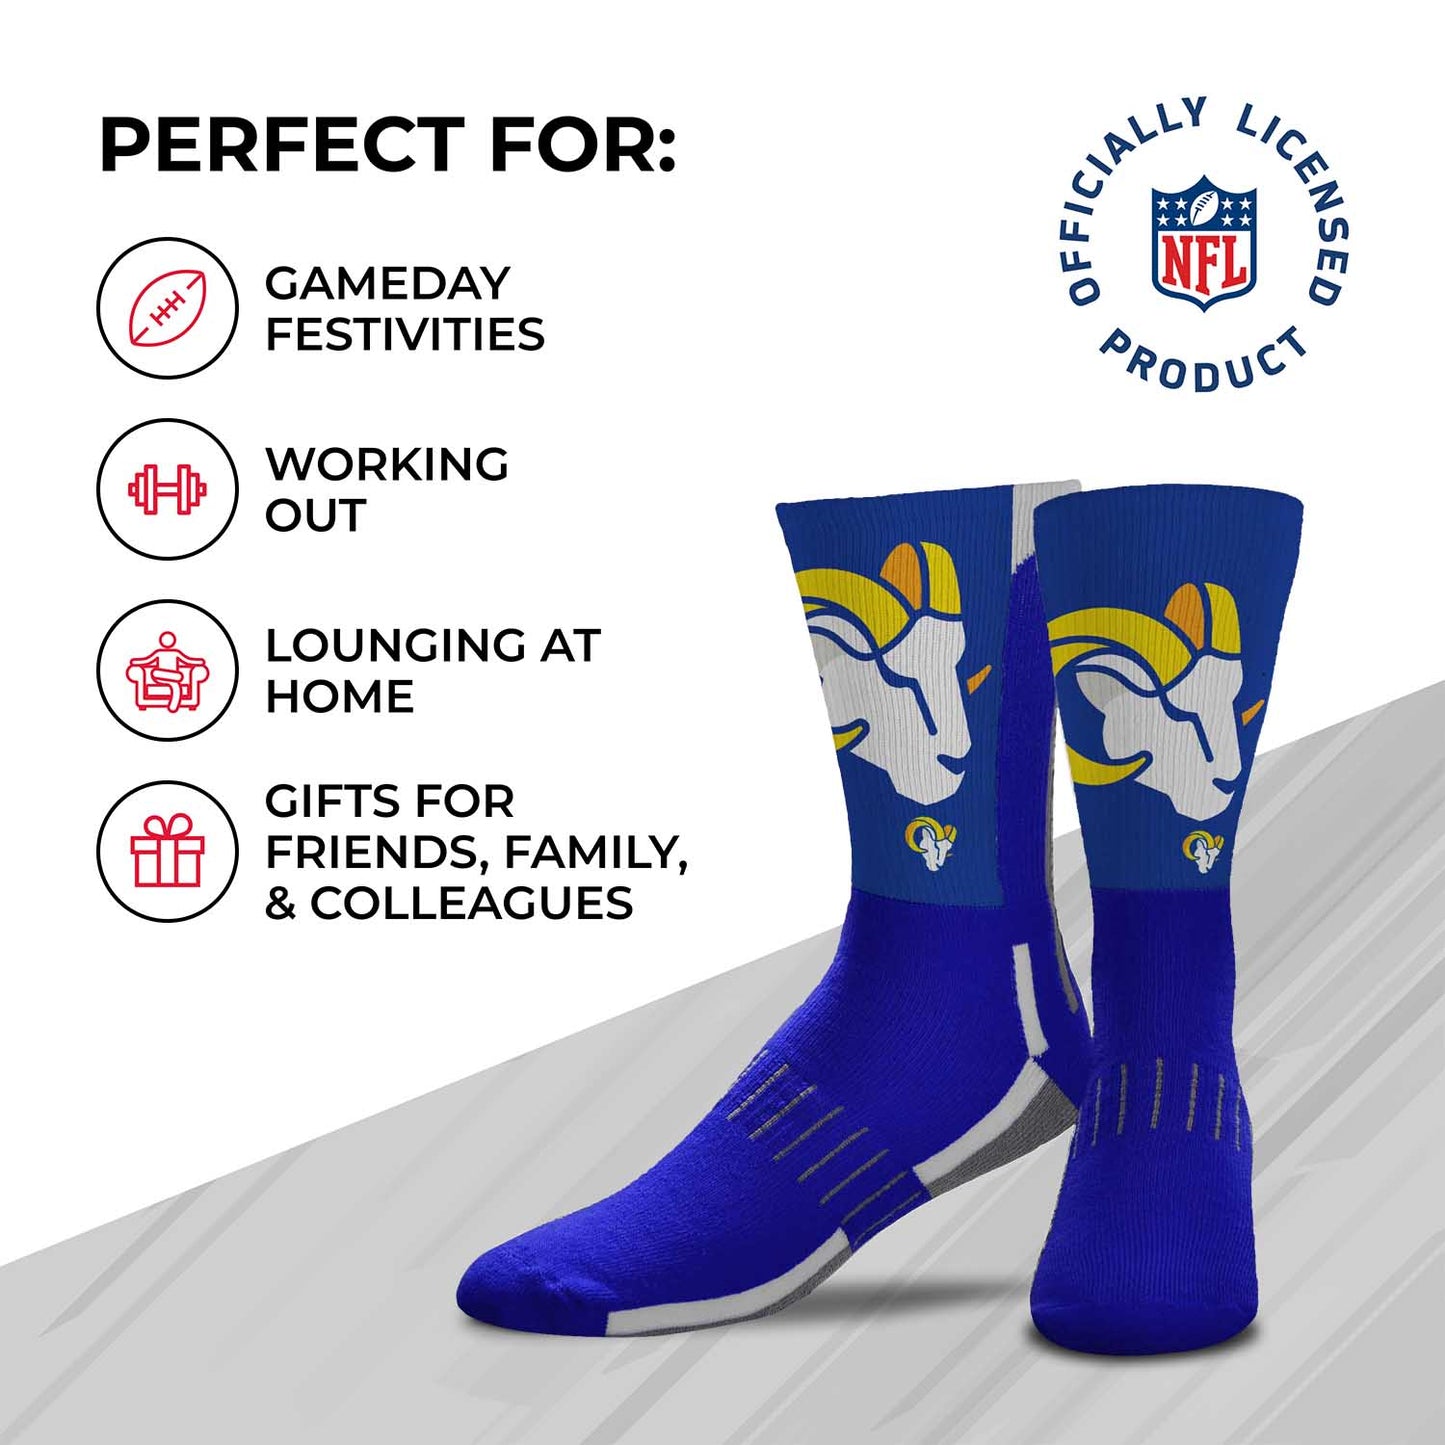 Los Angeles Rams NFL Adult Curve Socks - Royal